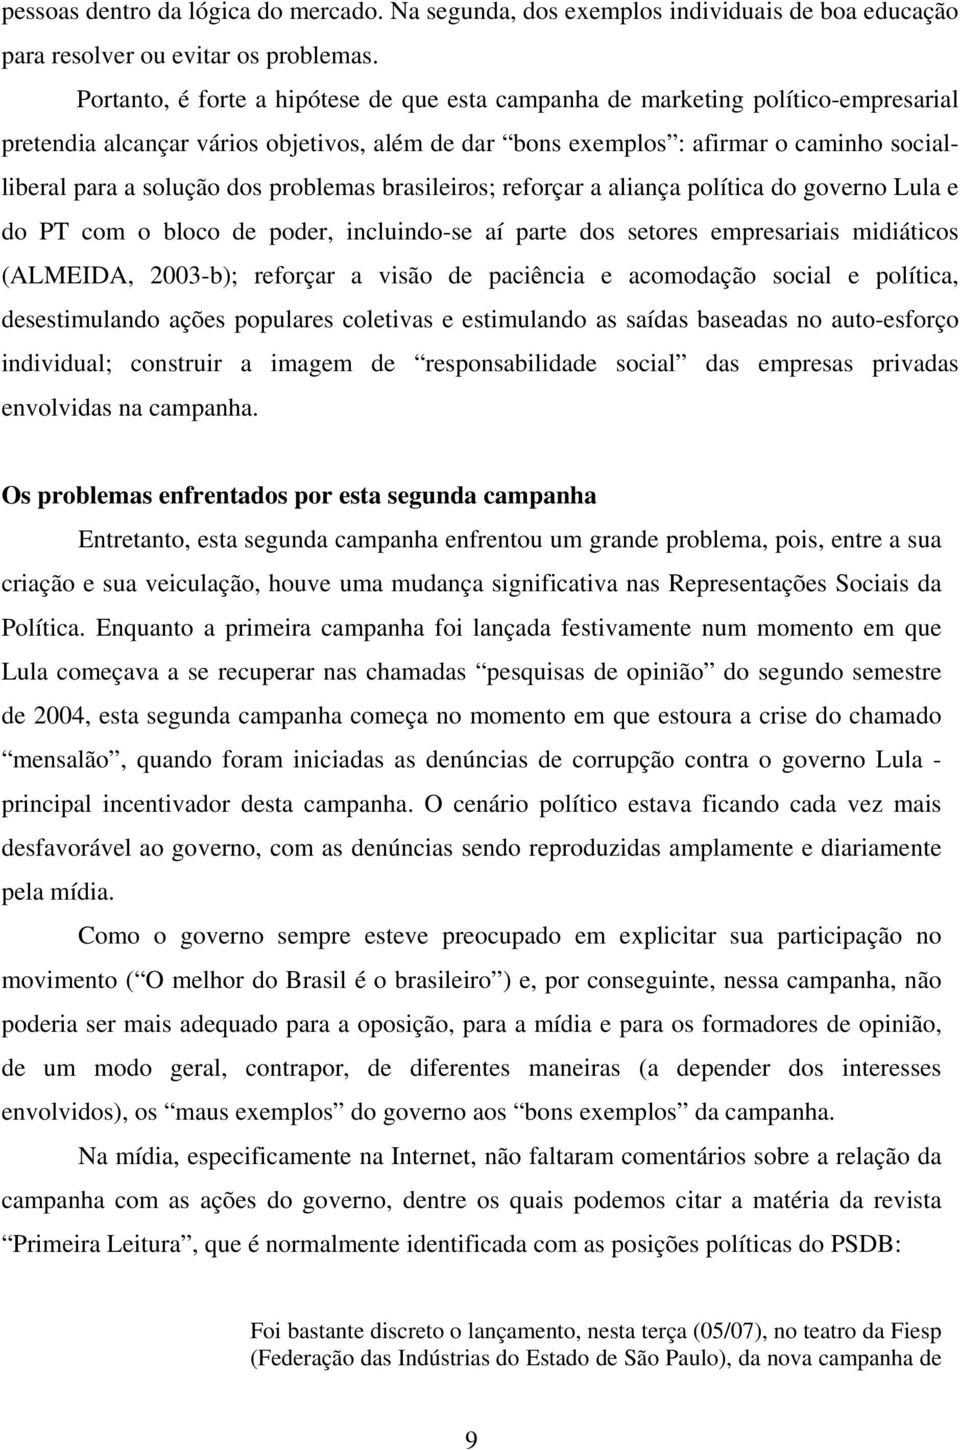 problemas brasileiros; reforçar a aliança política do governo Lula e do PT com o bloco de poder, incluindo-se aí parte dos setores empresariais midiáticos (ALMEIDA, 2003-b); reforçar a visão de